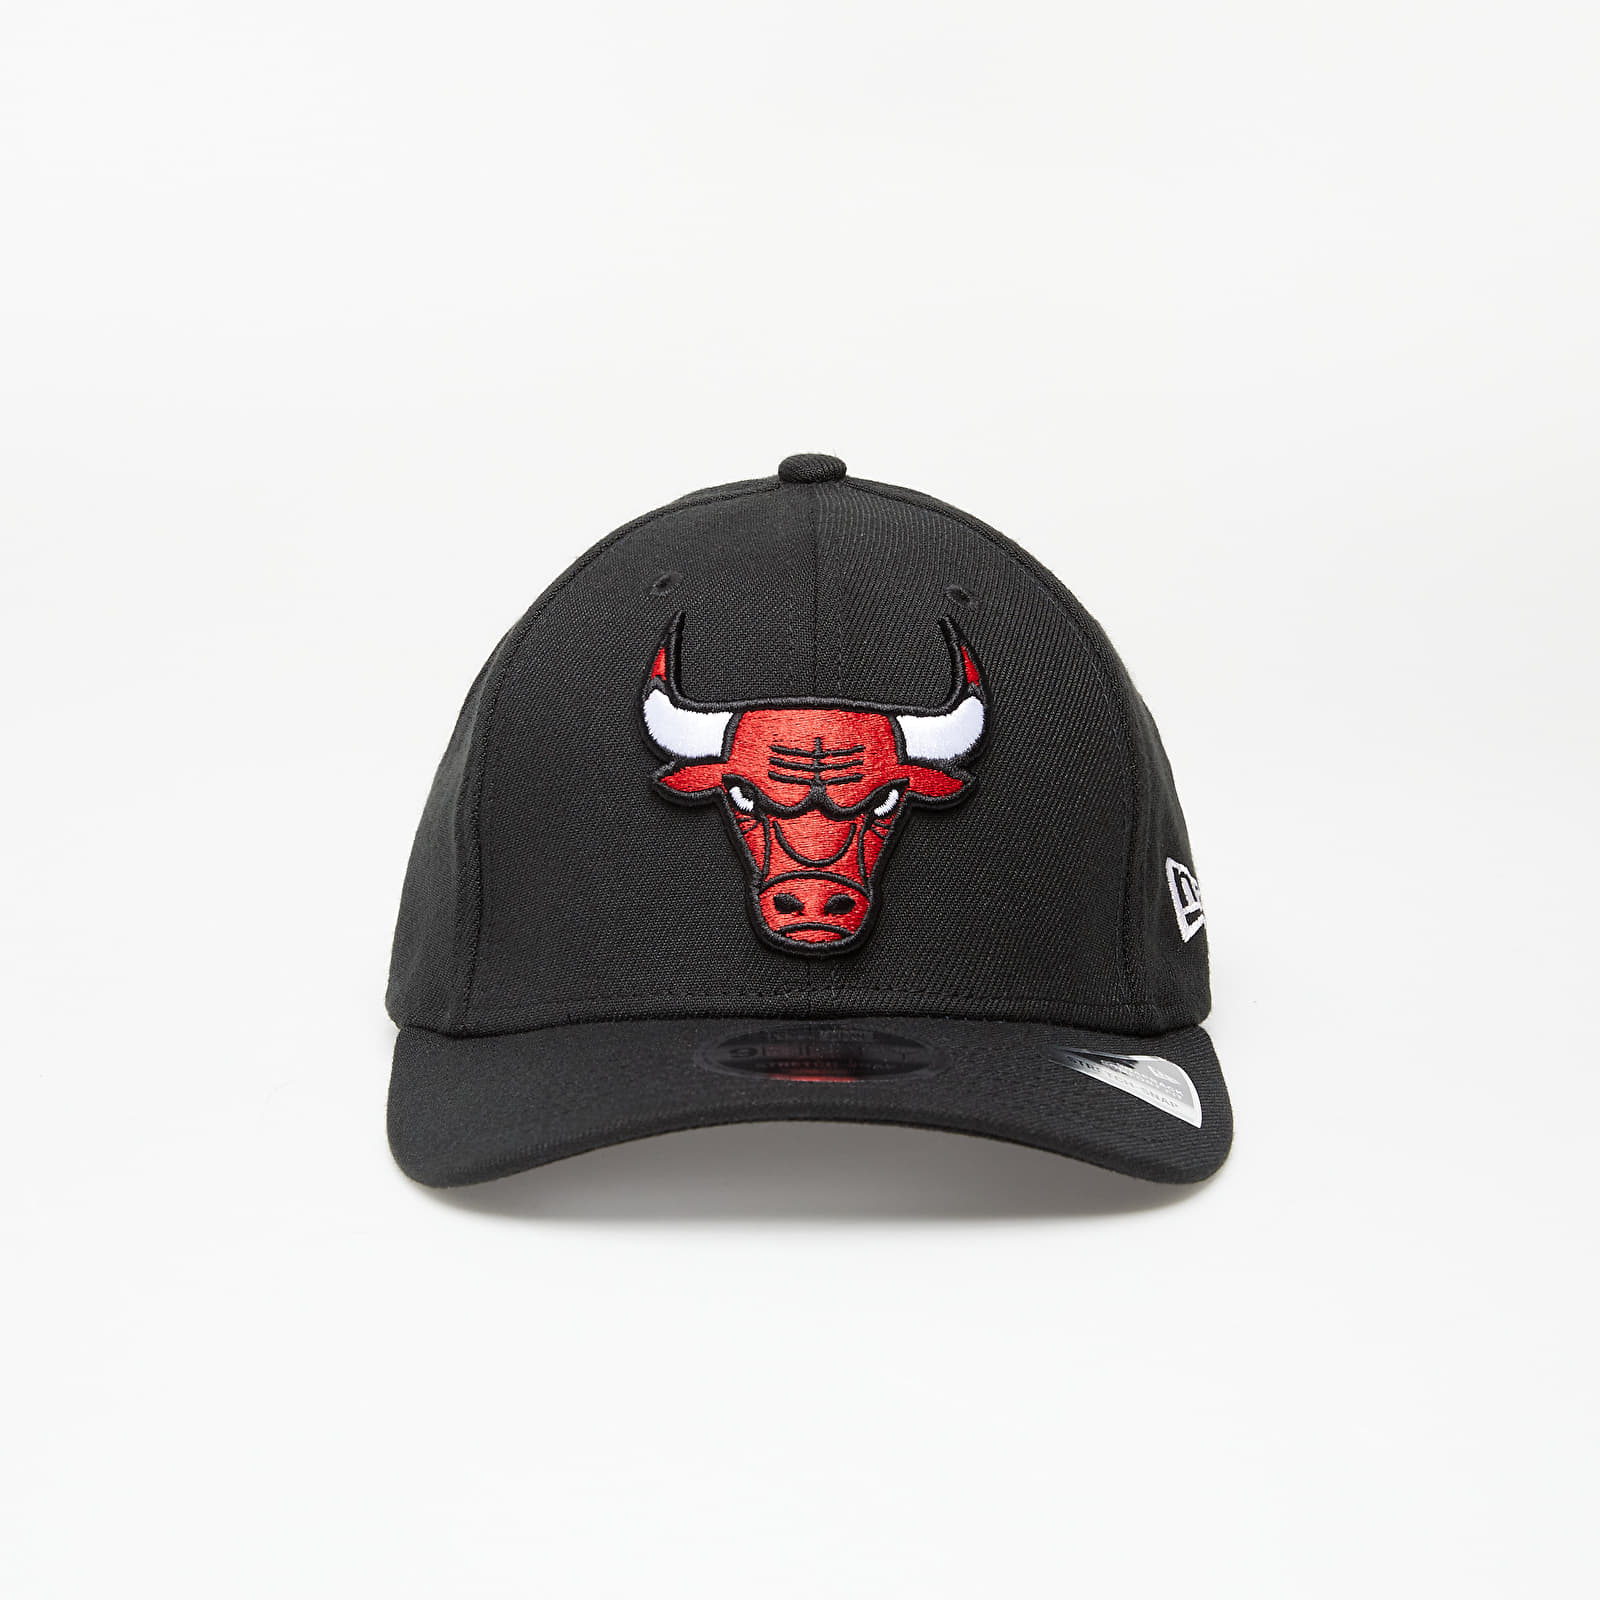 Caps New Era Cap 9Fifty Nba Stretch Snap Chicago Bulls Blackotc